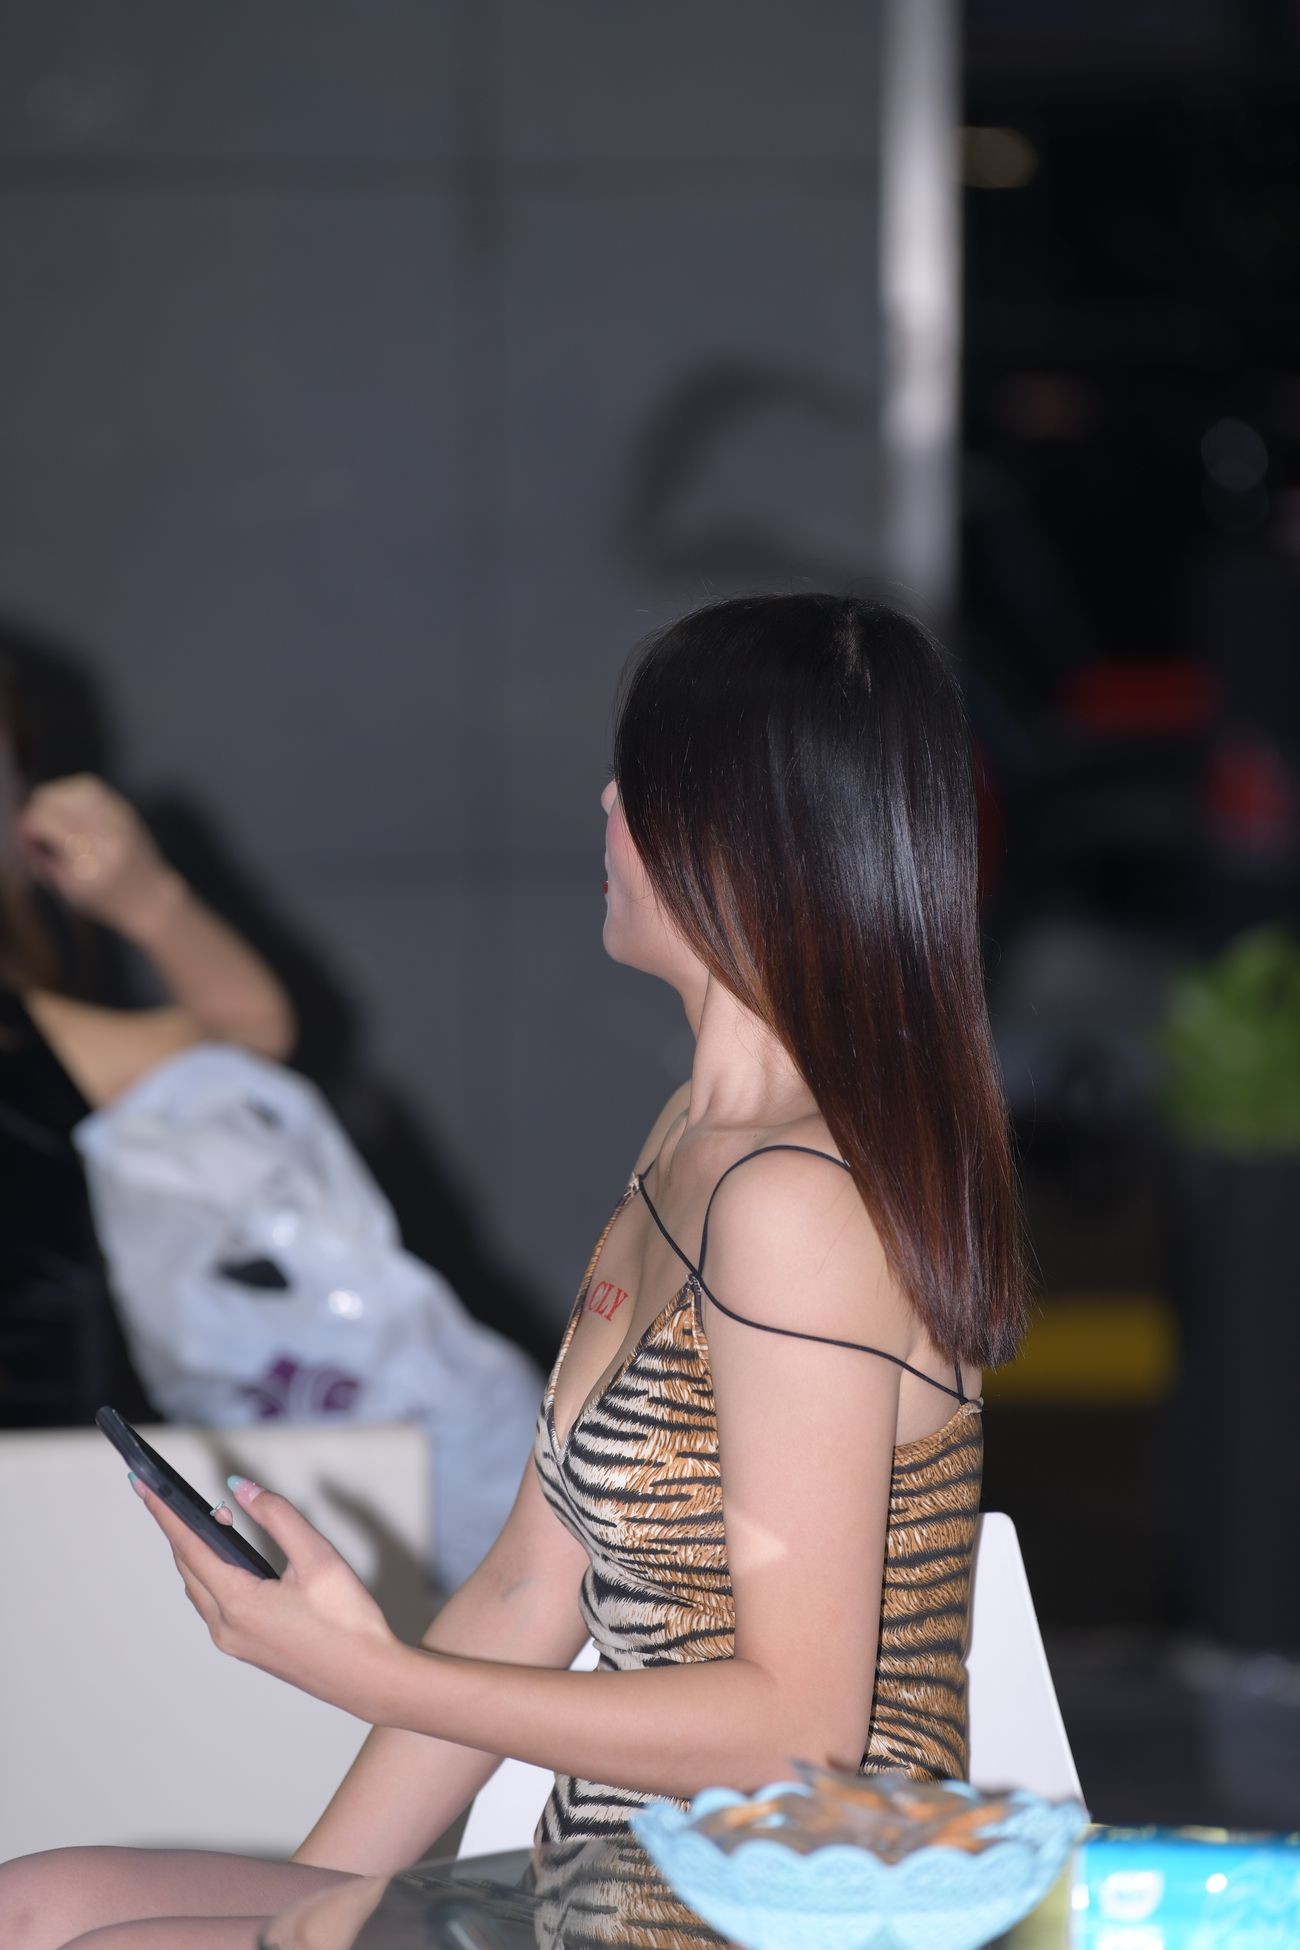 视觉冲击街拍作品性感的豹纹吊带裙美女 (18)